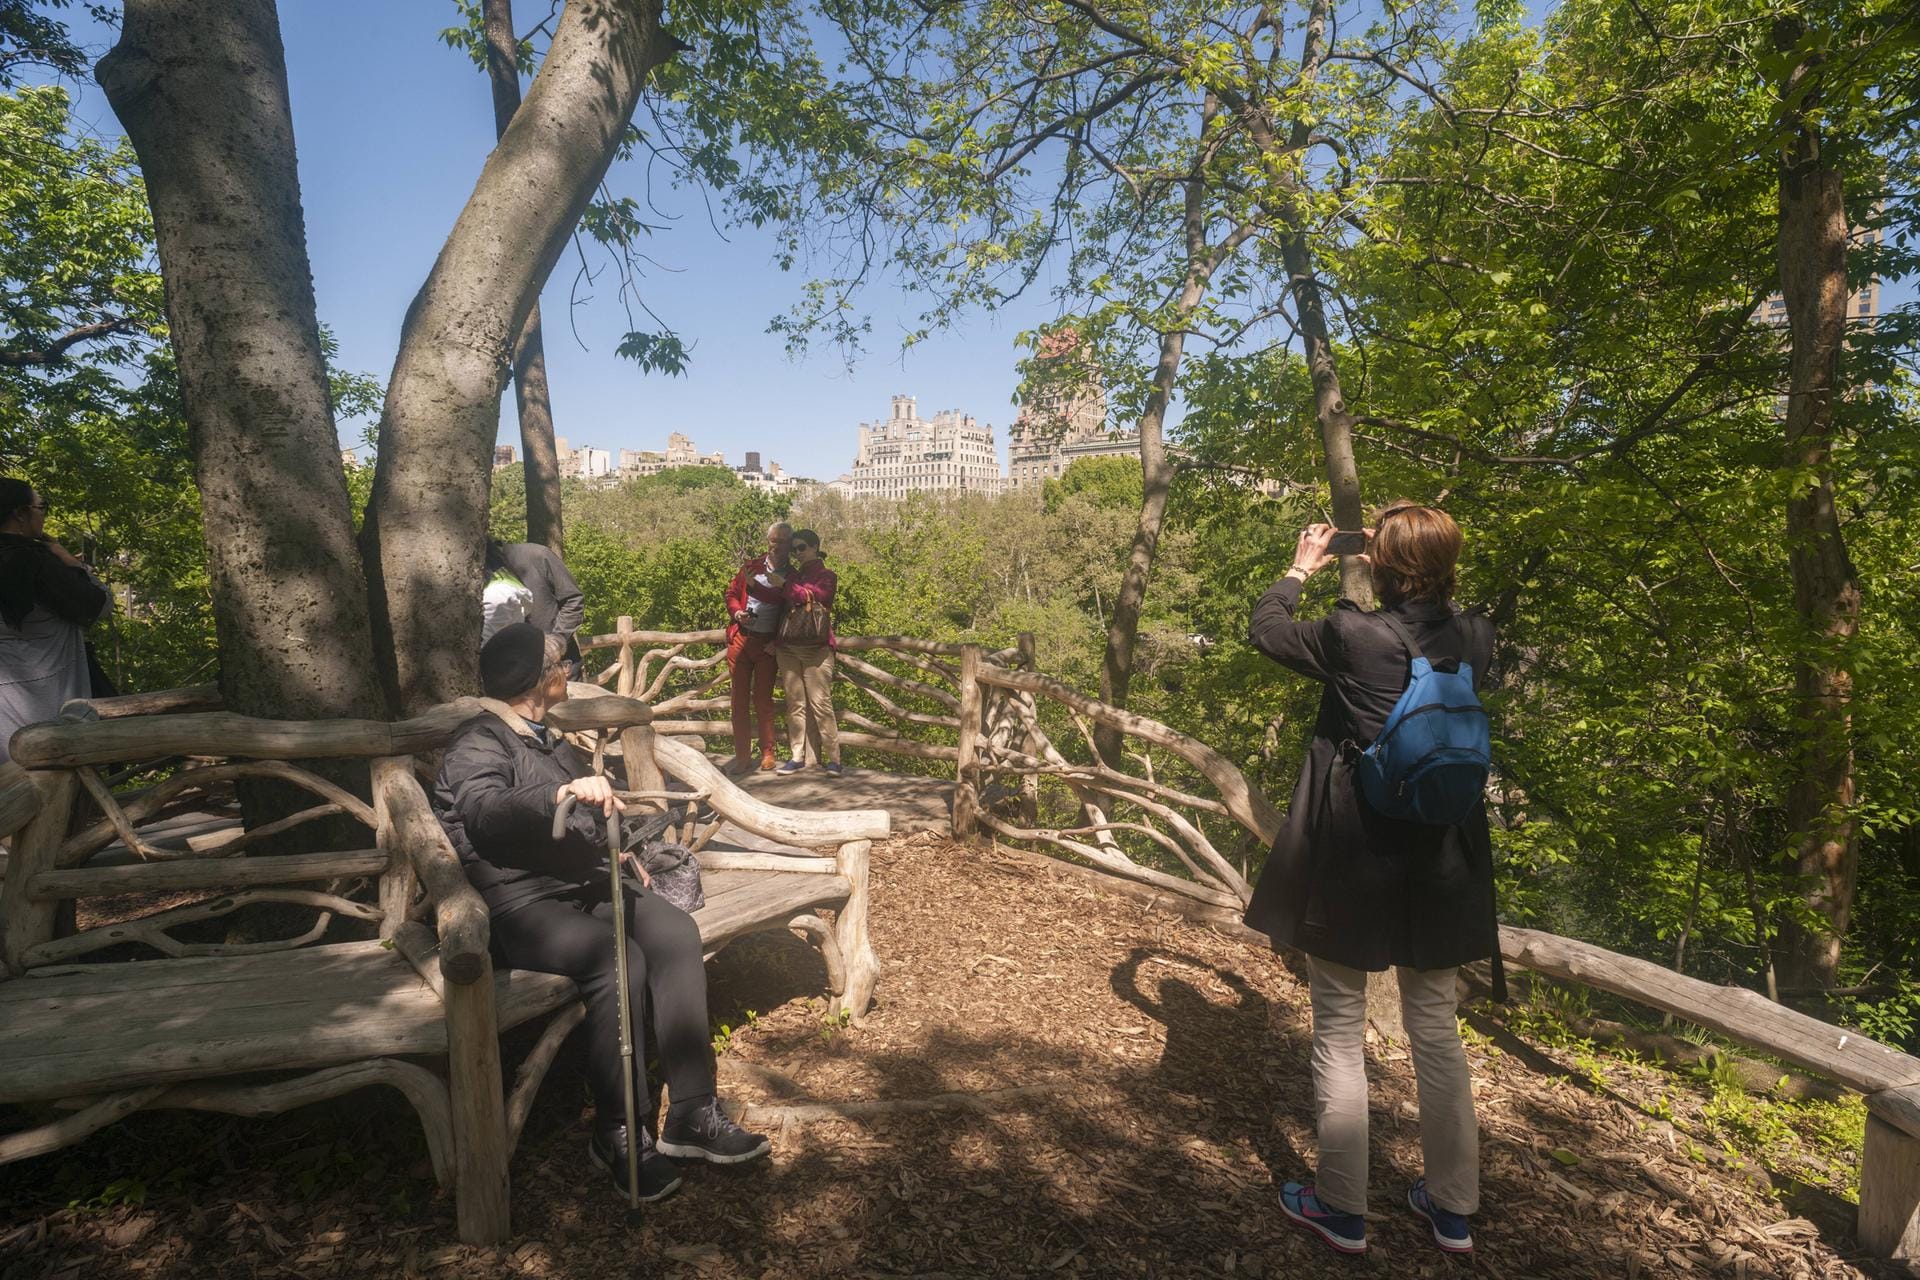 Das "Hallett Nature Sanctuary" im Central Park in New York eröffnet am 1. Juli 2016 wieder für die Öffentlichkeit.